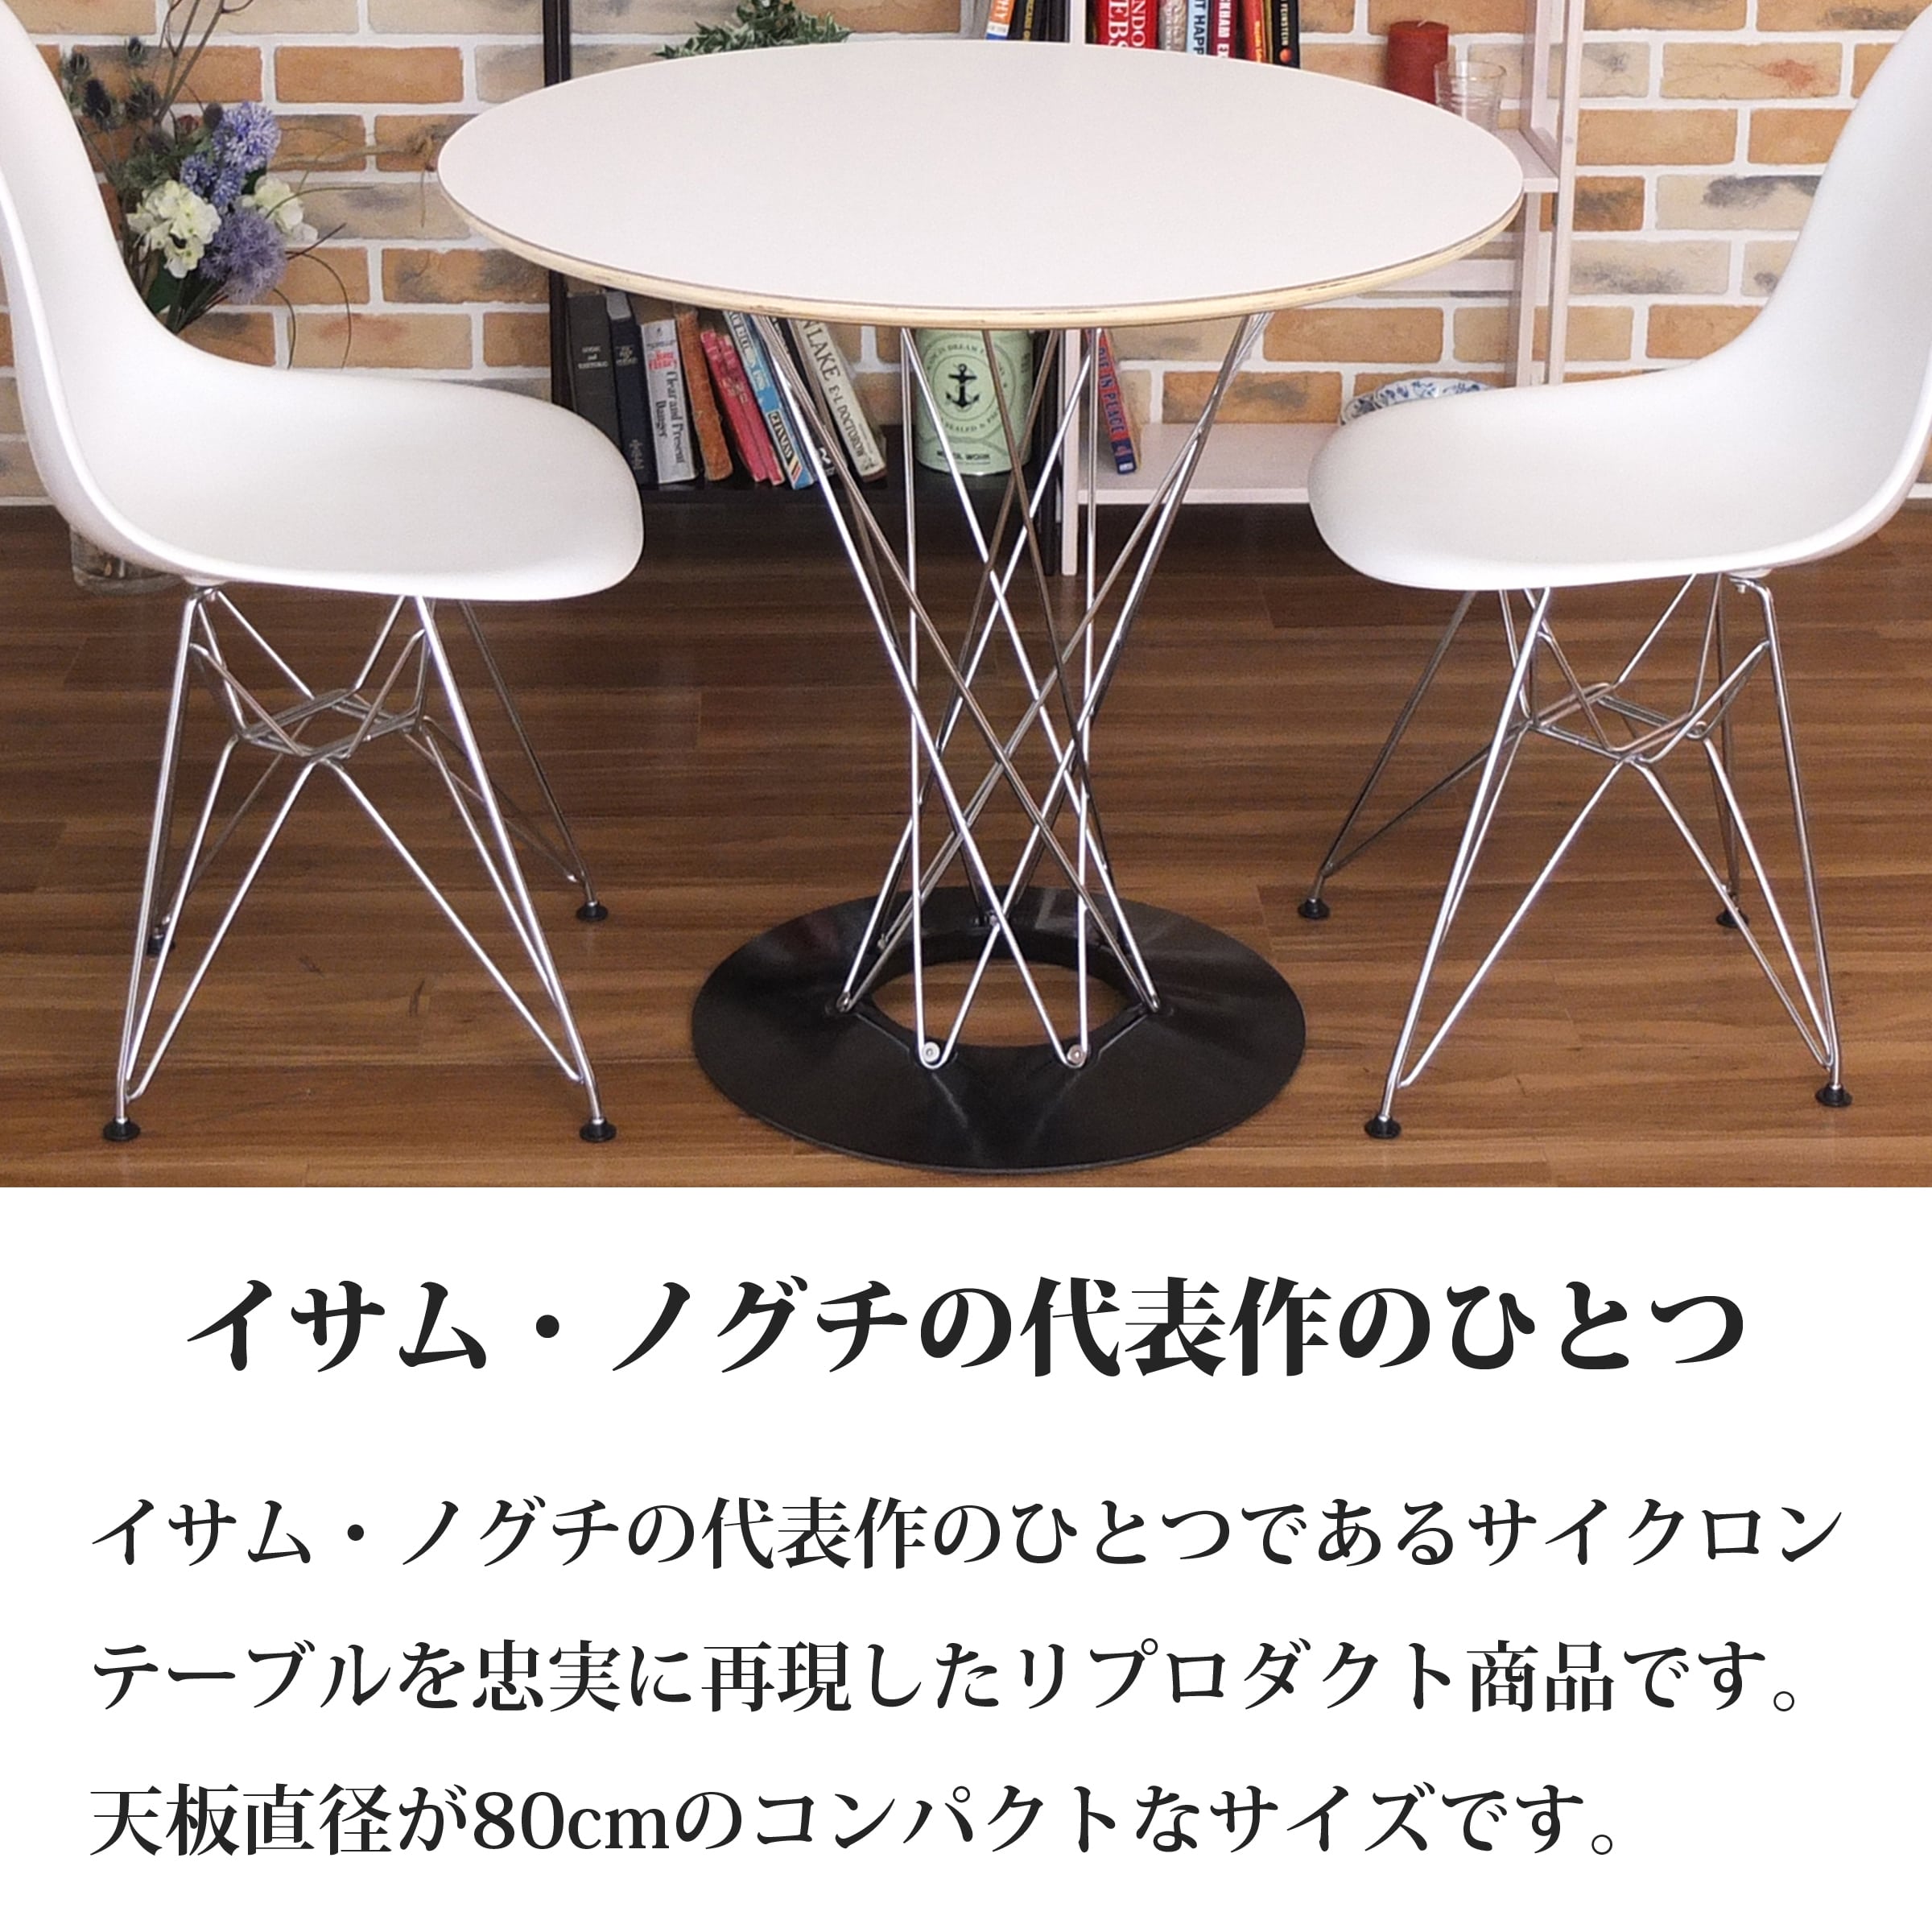 【ブラック】サイクロンテーブル 幅80cm イサム・ノグチ ダイニング カウンターテーブル デザイナーズ リプロダクト